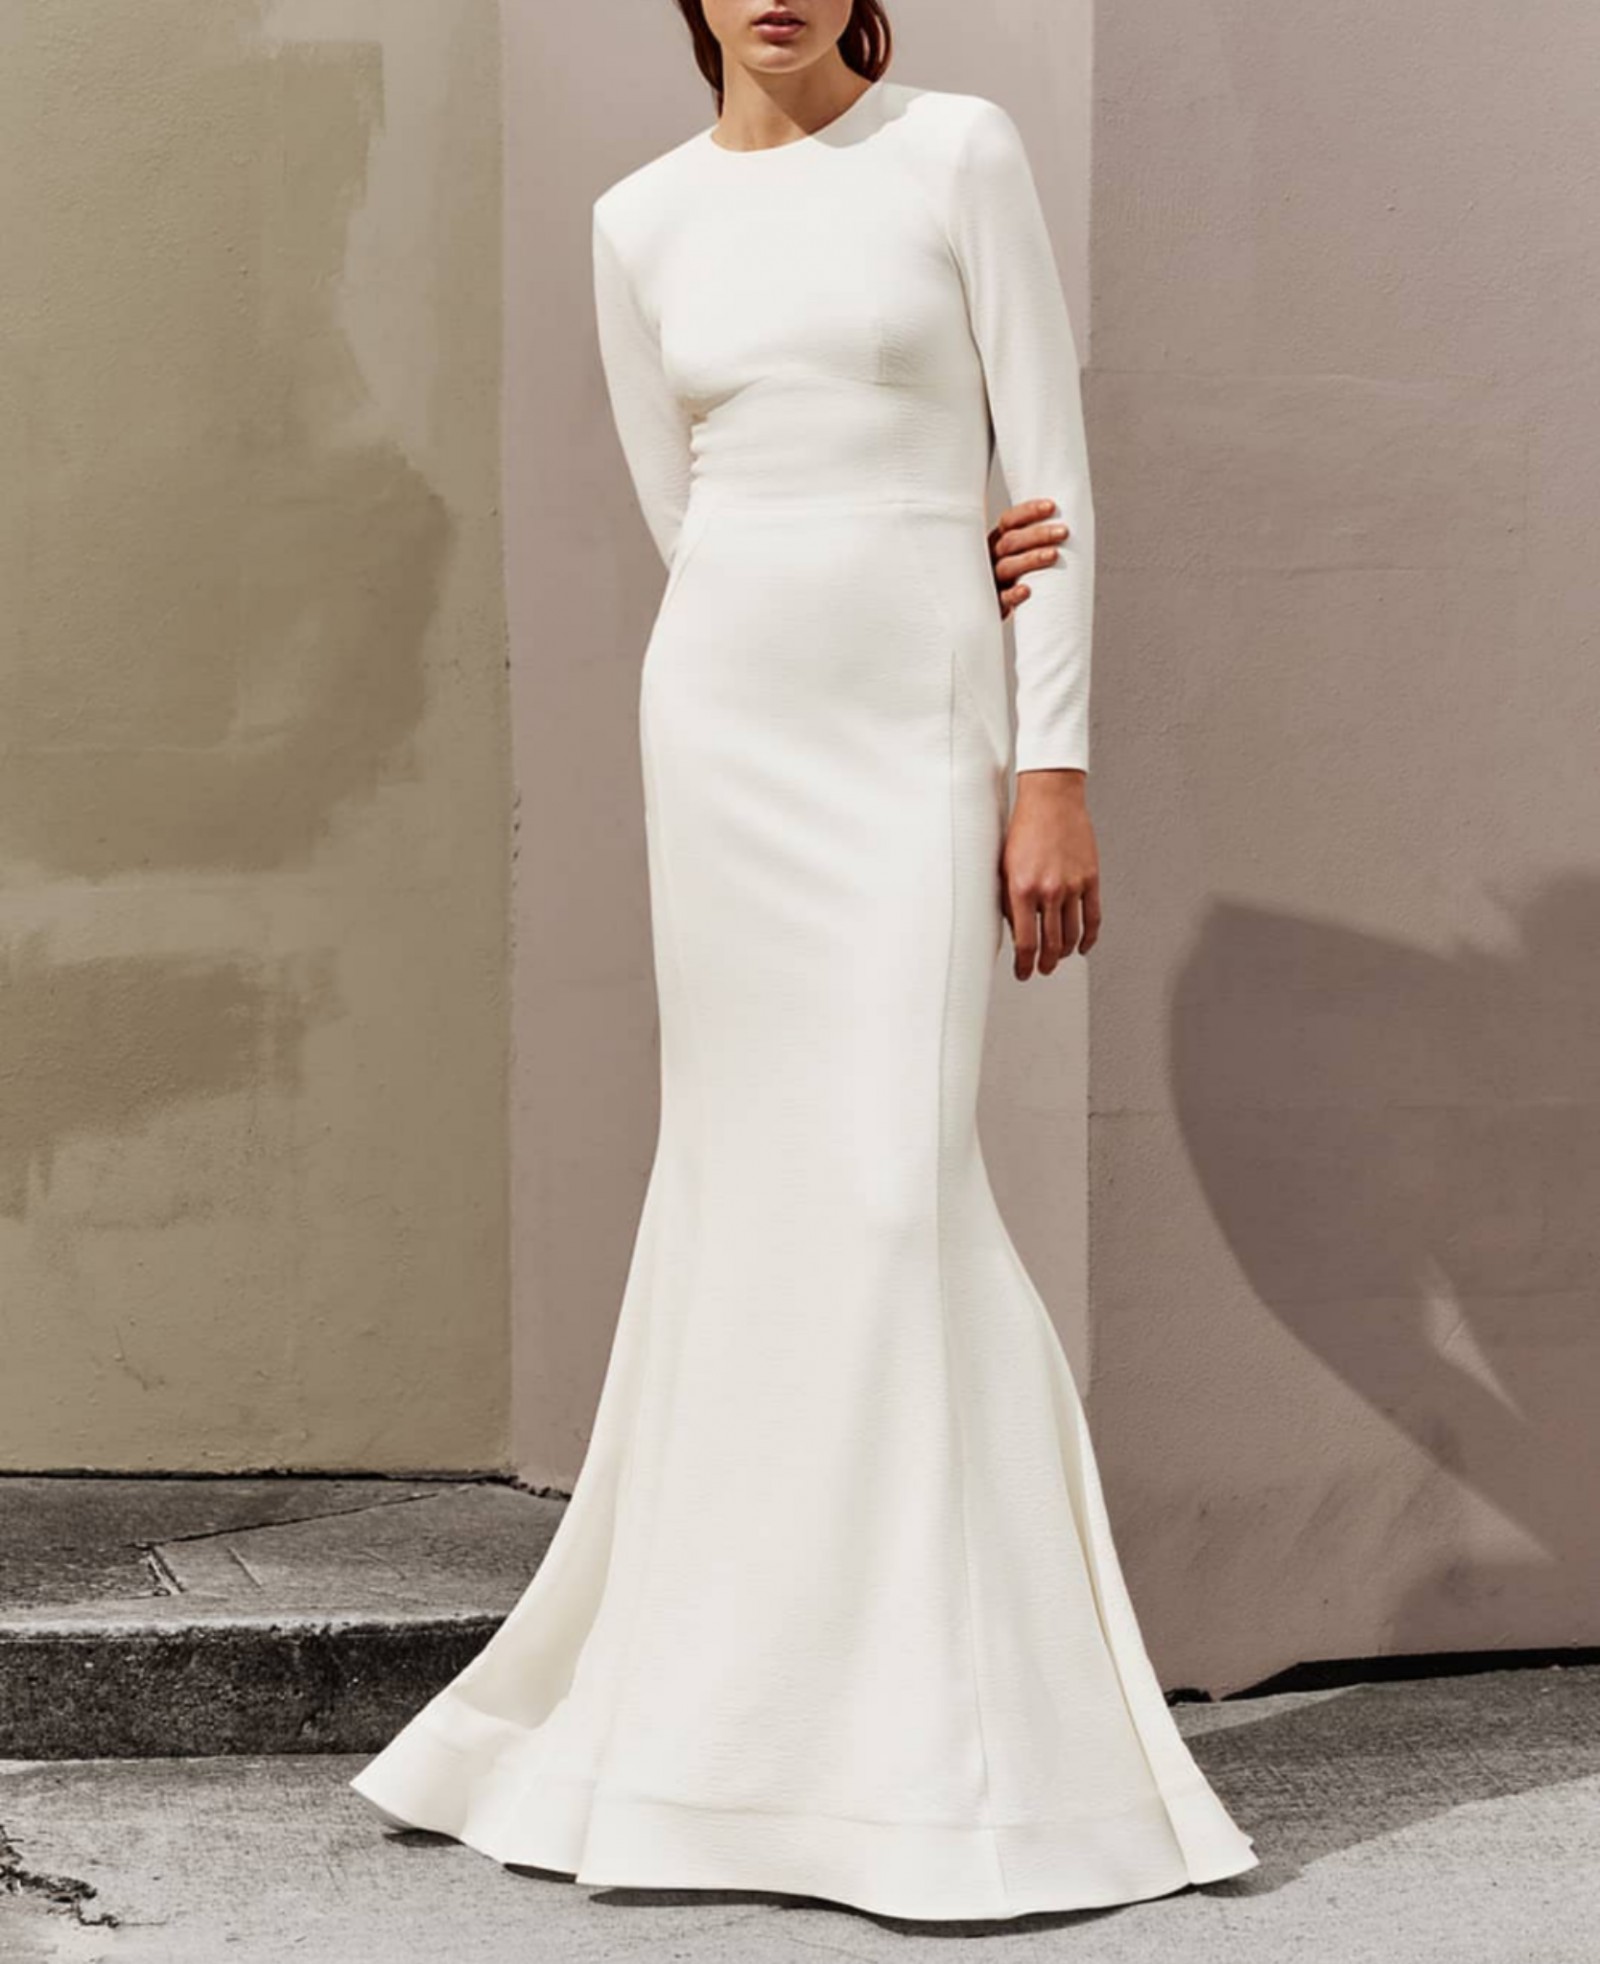 Buy > rebecca vallance white dress > in stock